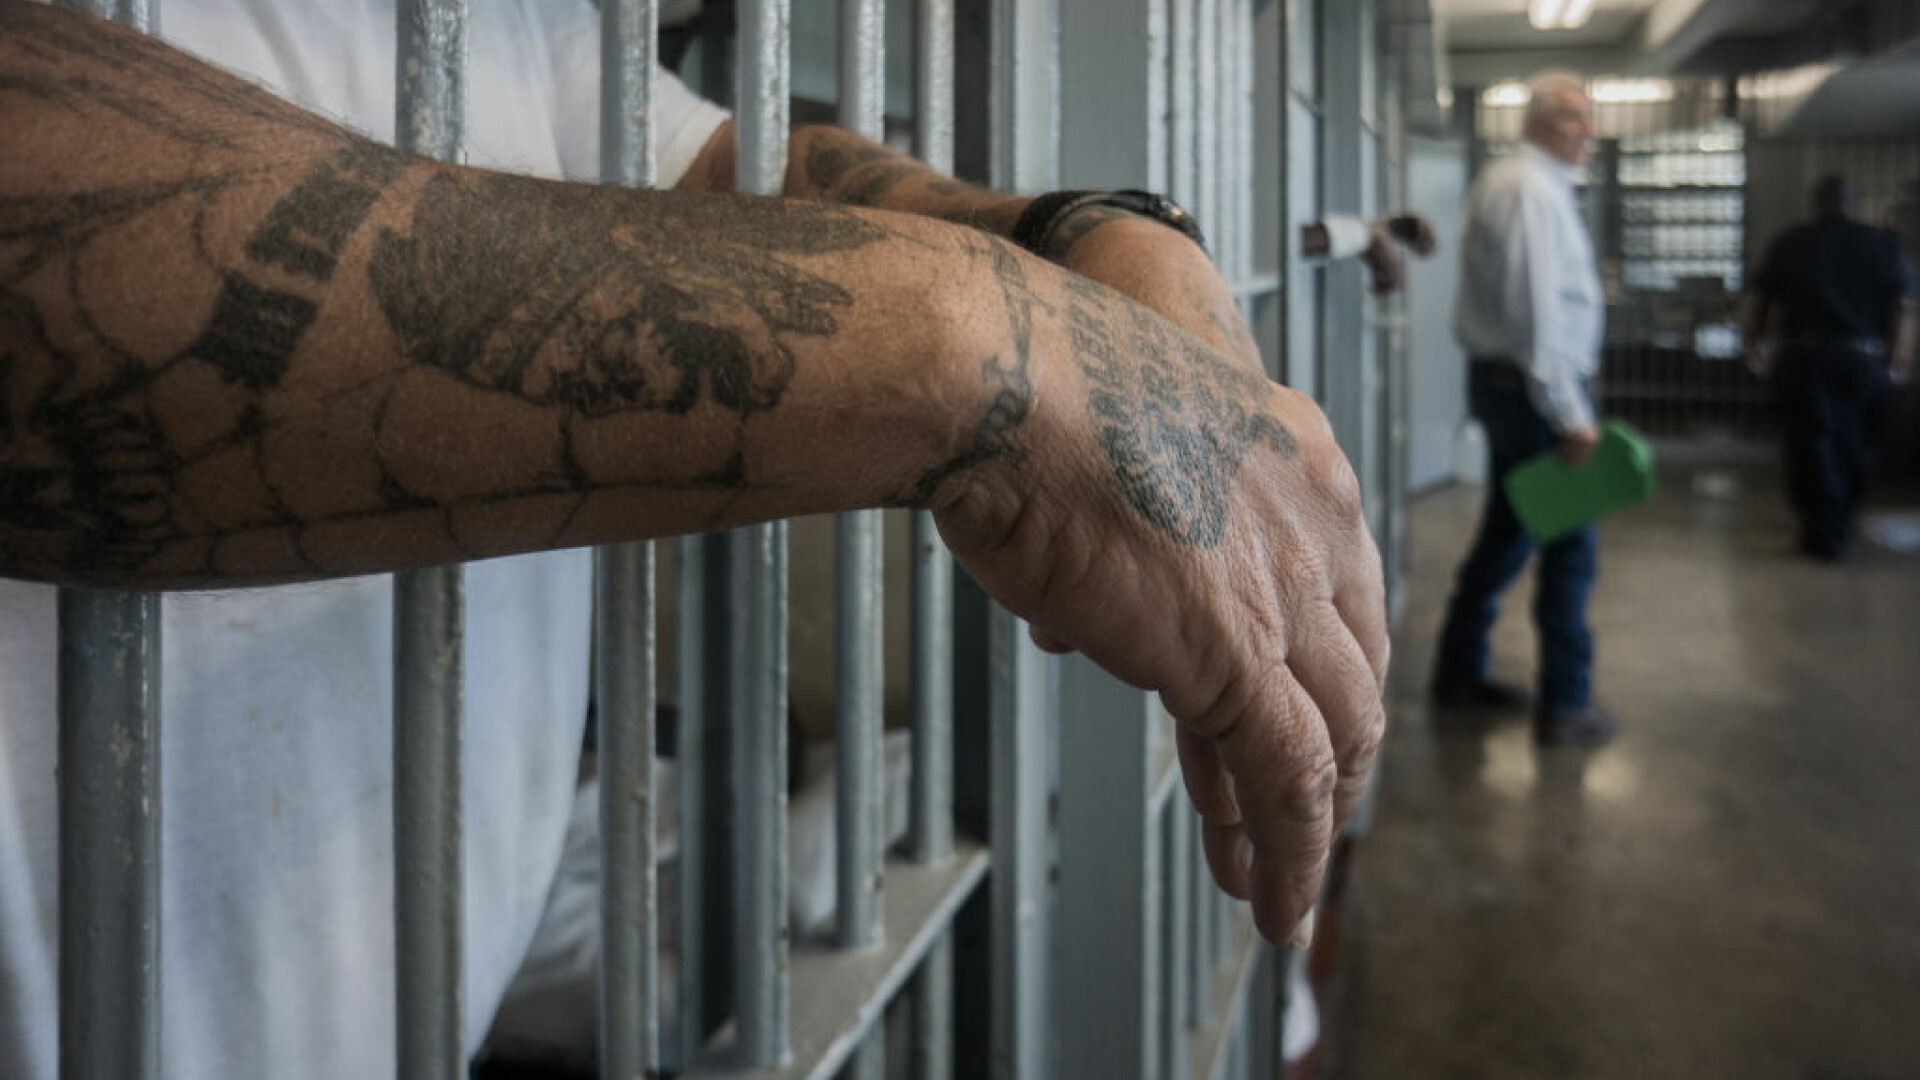 Bucureștean cu HIV eliberat din închisoare, cu grade de colonel tatuate pe umeri, a mușcat un polițist: ”Astea sunt grade?”